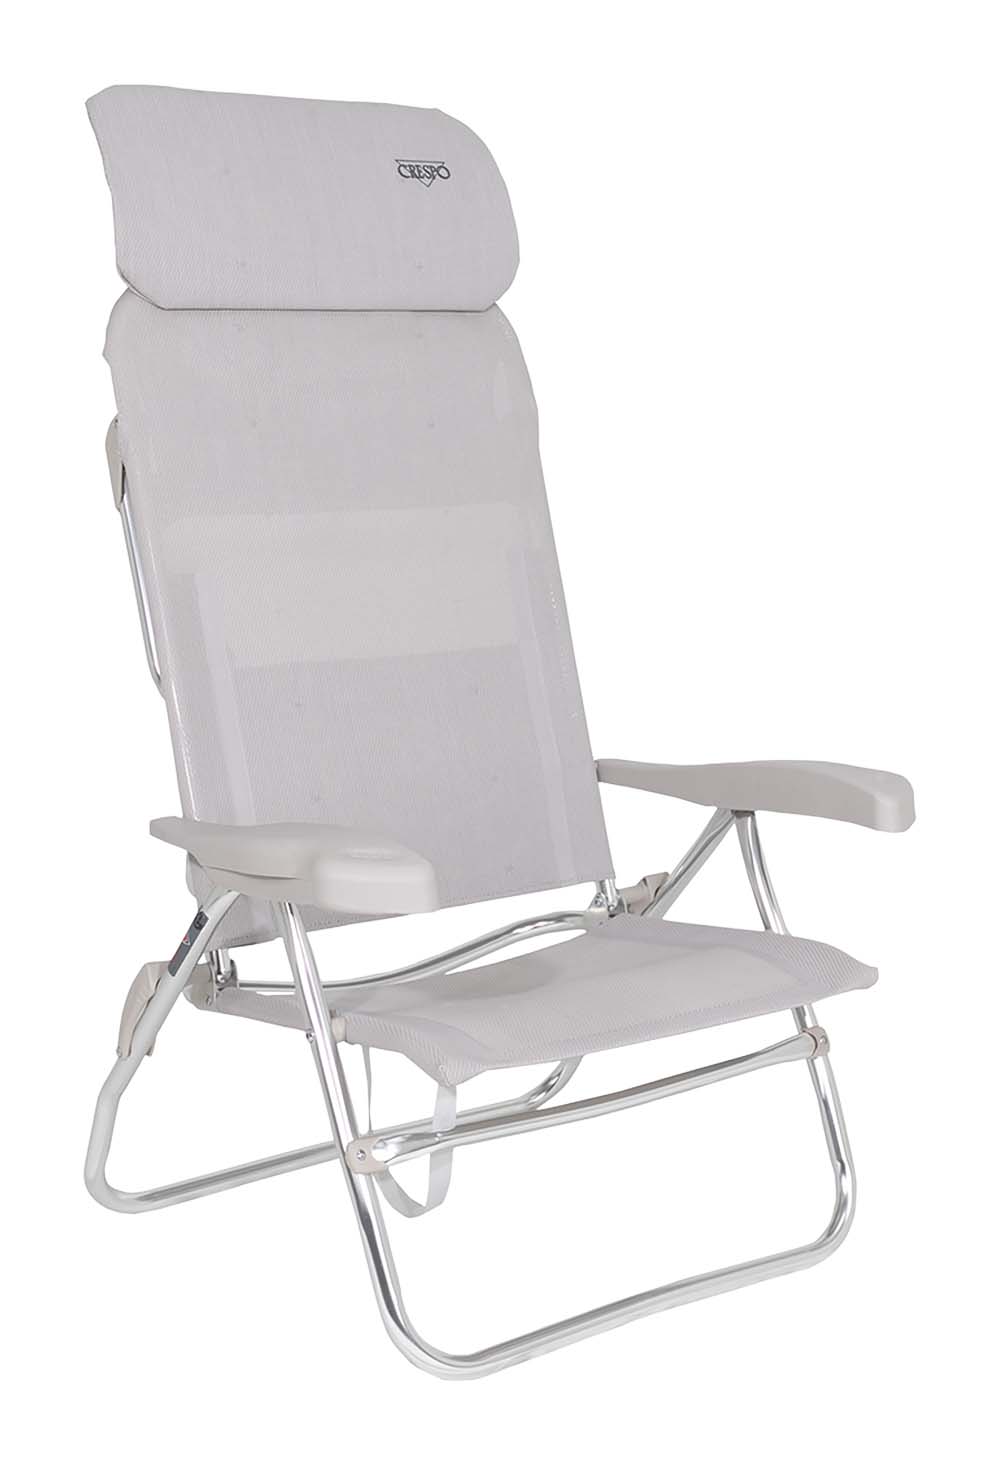 1149363 Een luxe strandstoel met een hogere zit en een verstelbare hoofdsteun. Ideaal voor gebruik op het strand, voor de tent of voor onderweg. Deze stoel is verstelbaar is 7 standen waarvan 1 stand volledig plat ligt. Hierbij steunt de gebogen bovenkant voor ondersteuning op de grond. Daarnaast is deze strandstoel voorzien van comfortabele armleuningen. Deze stoel is door de draaglussen en zijn lage gewicht gemakkelijk mee te nemen.